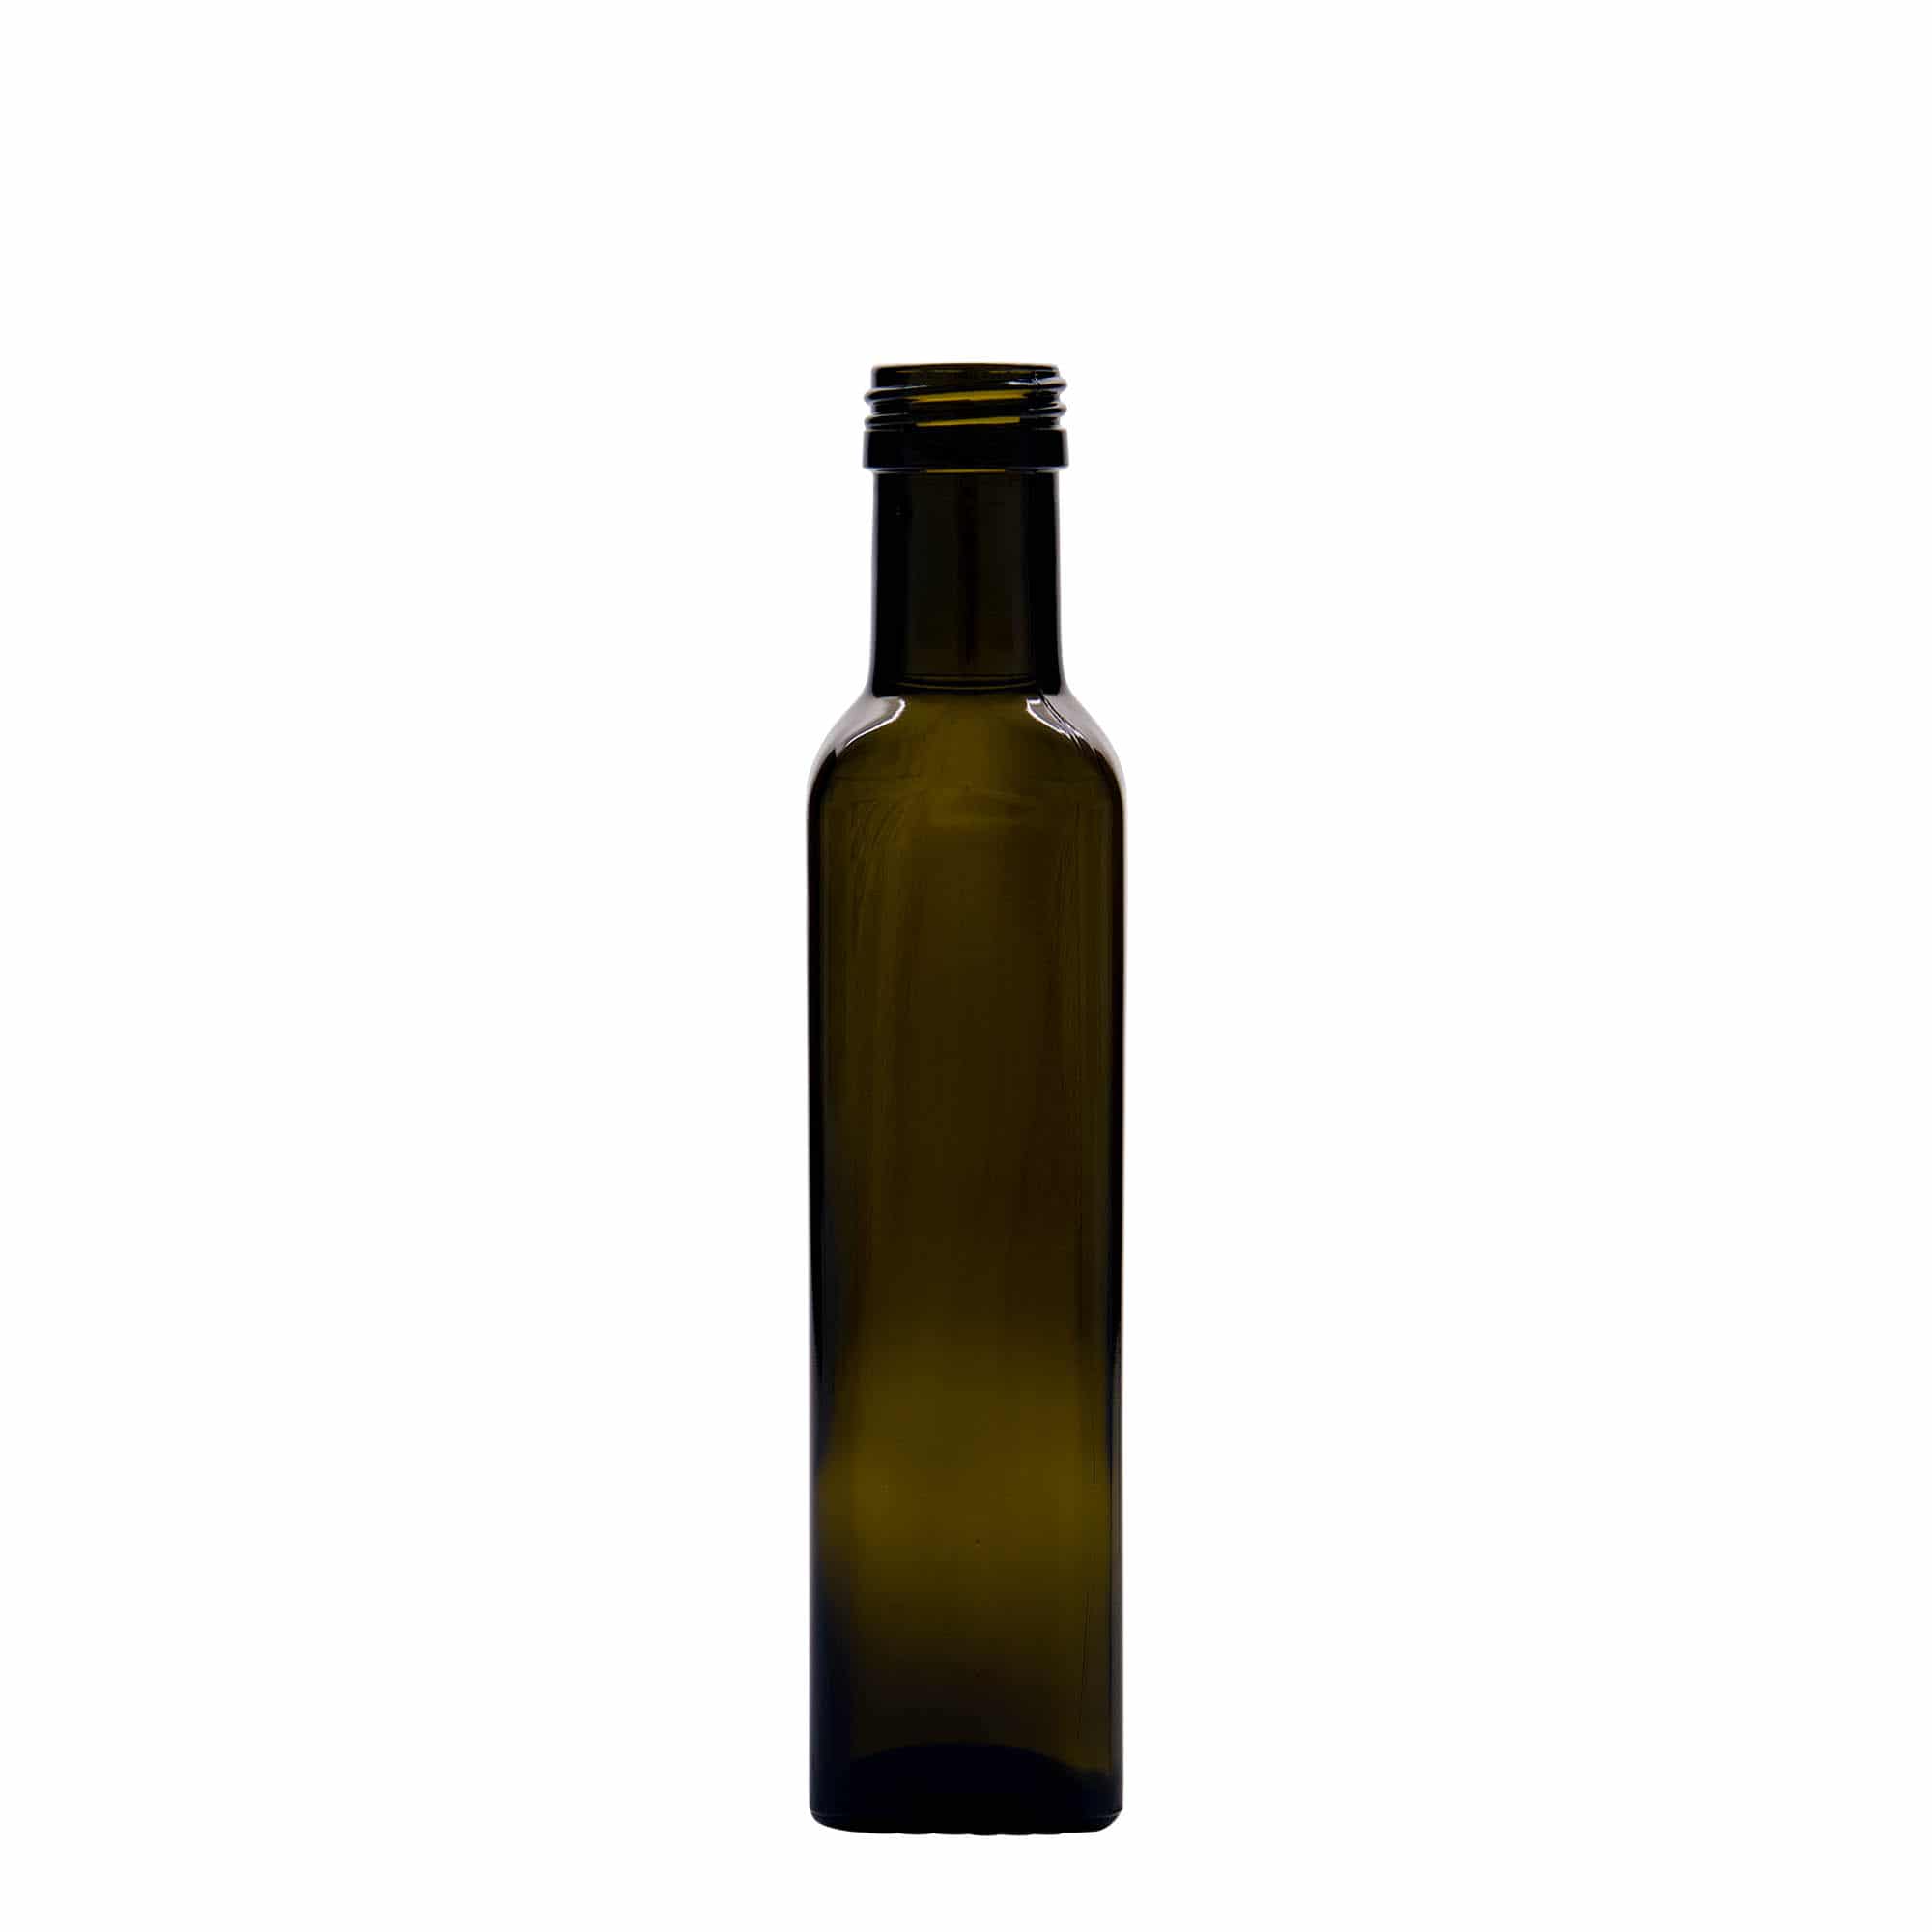 Northio Flasche für Öl und Essig